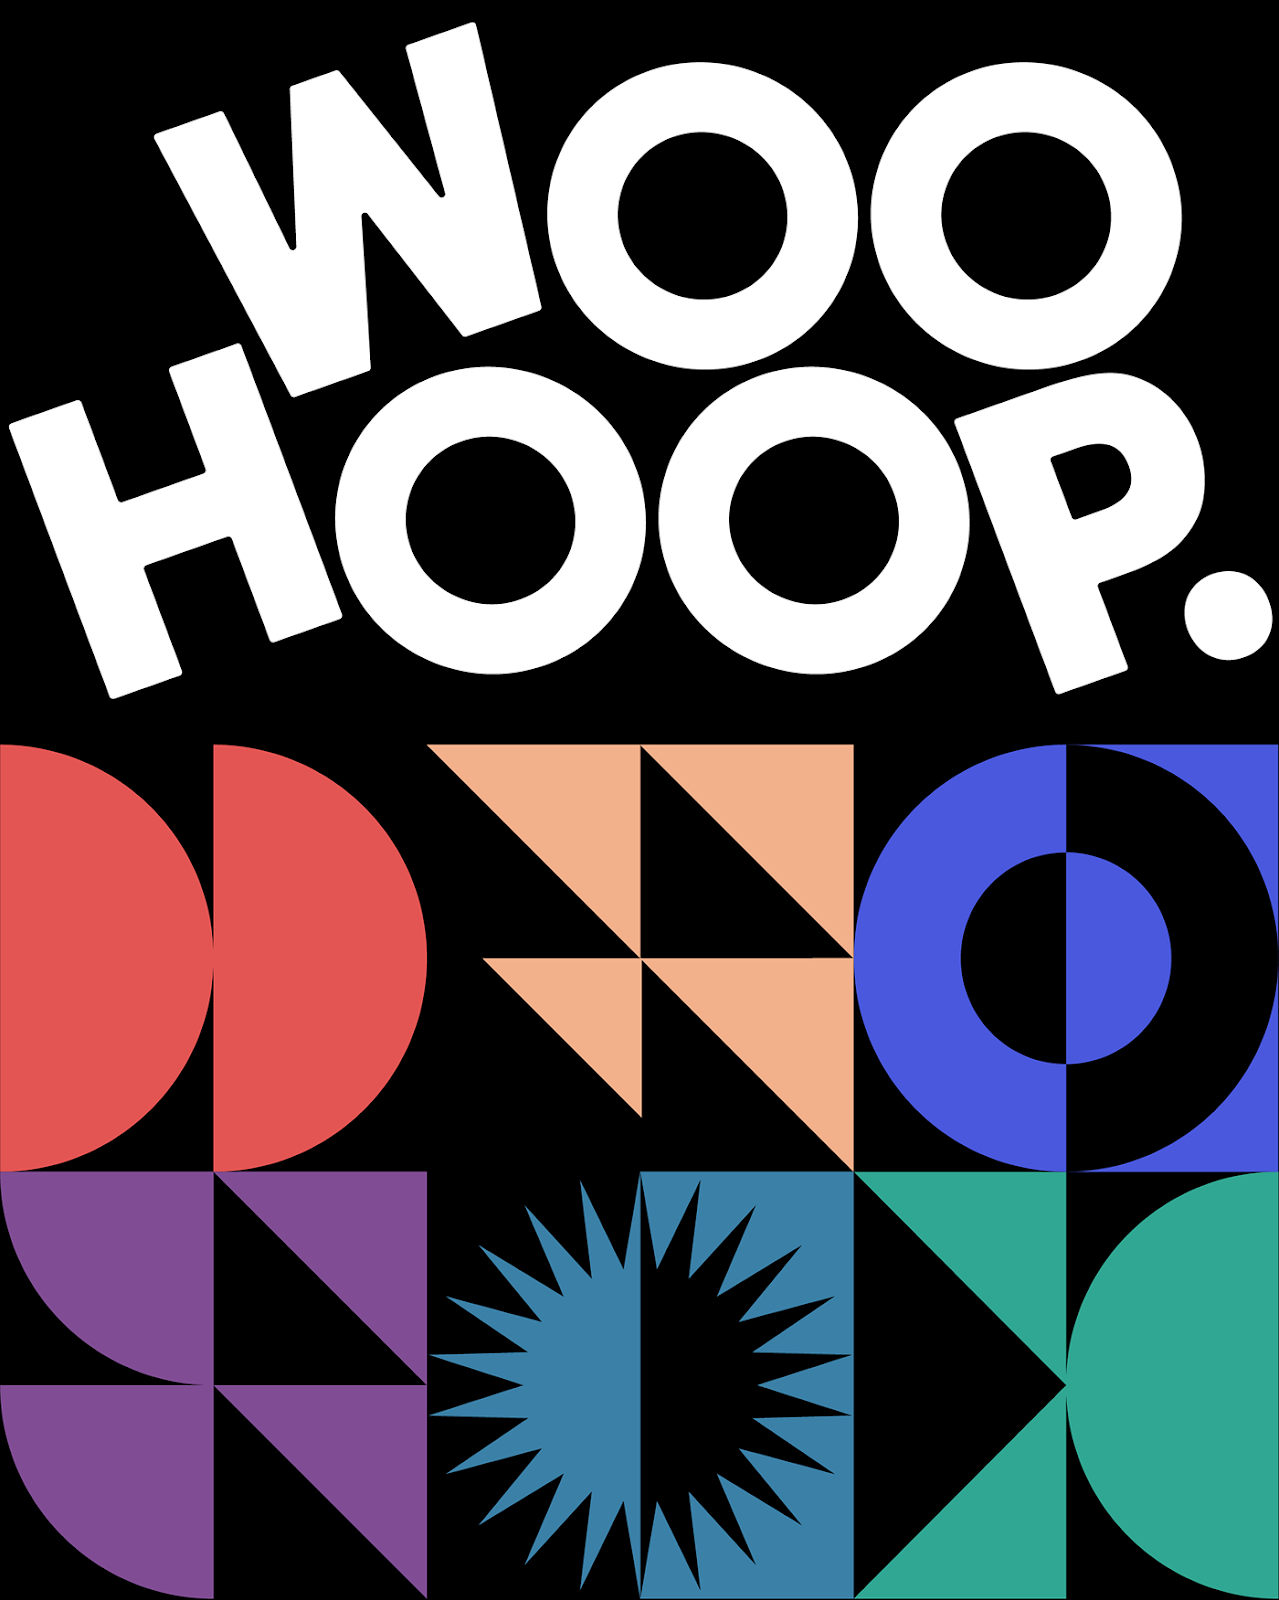 Xây dựng thương hiệu và nhận diện hình ảnh của Woohoop của Marco Oggian